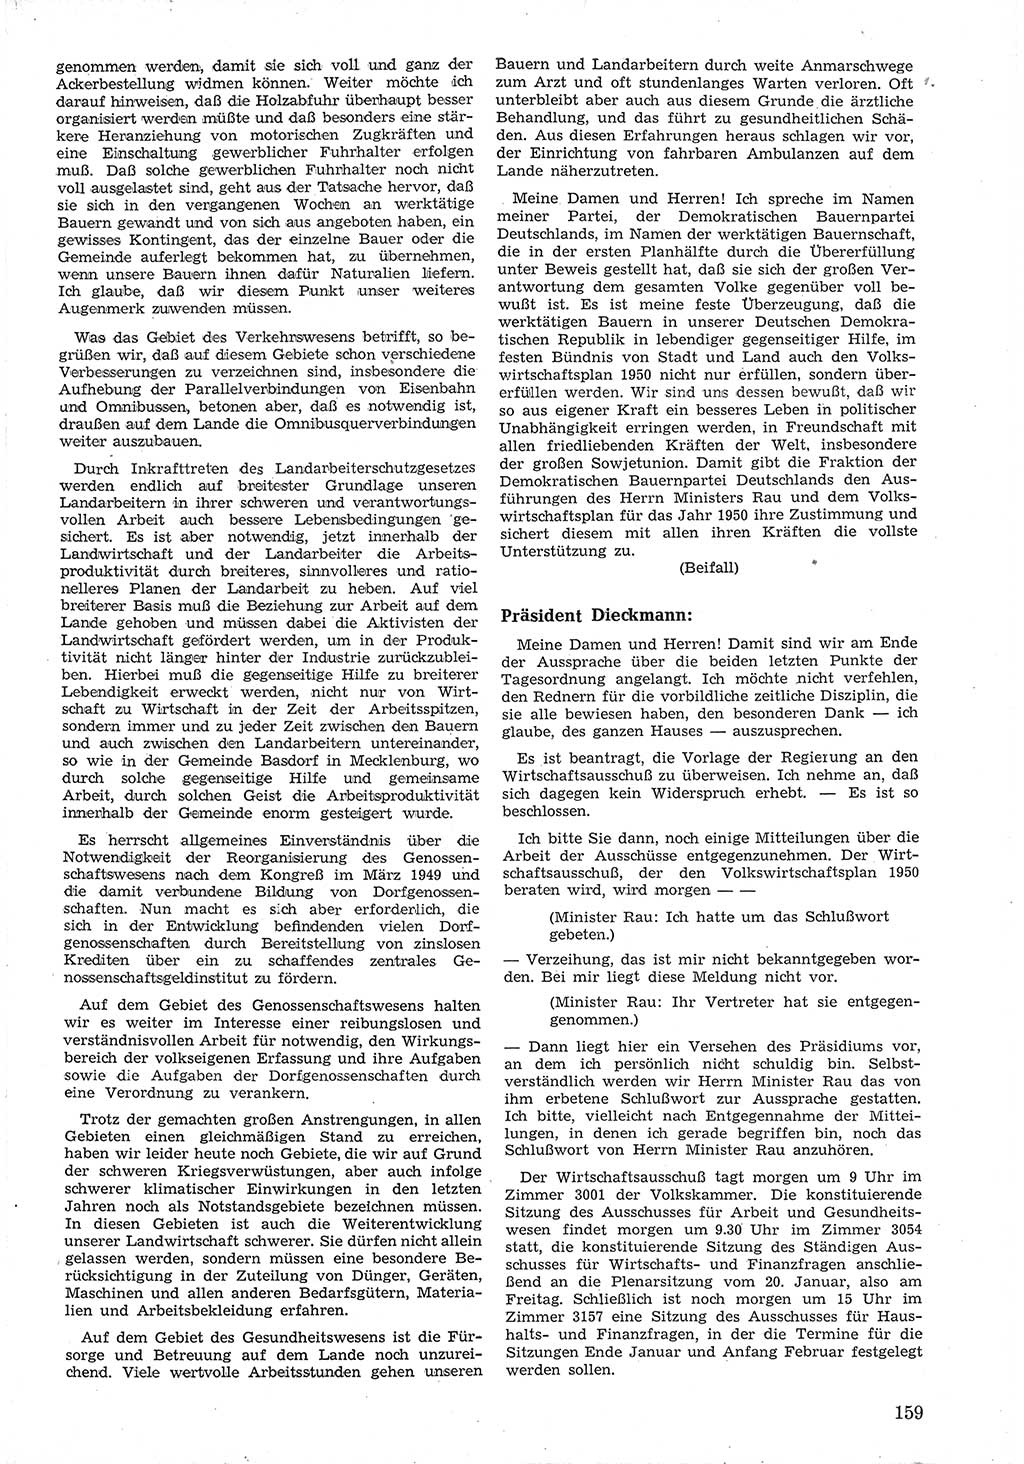 Provisorische Volkskammer (VK) der Deutschen Demokratischen Republik (DDR) 1949-1950, Dokument 171 (Prov. VK DDR 1949-1950, Dok. 171)